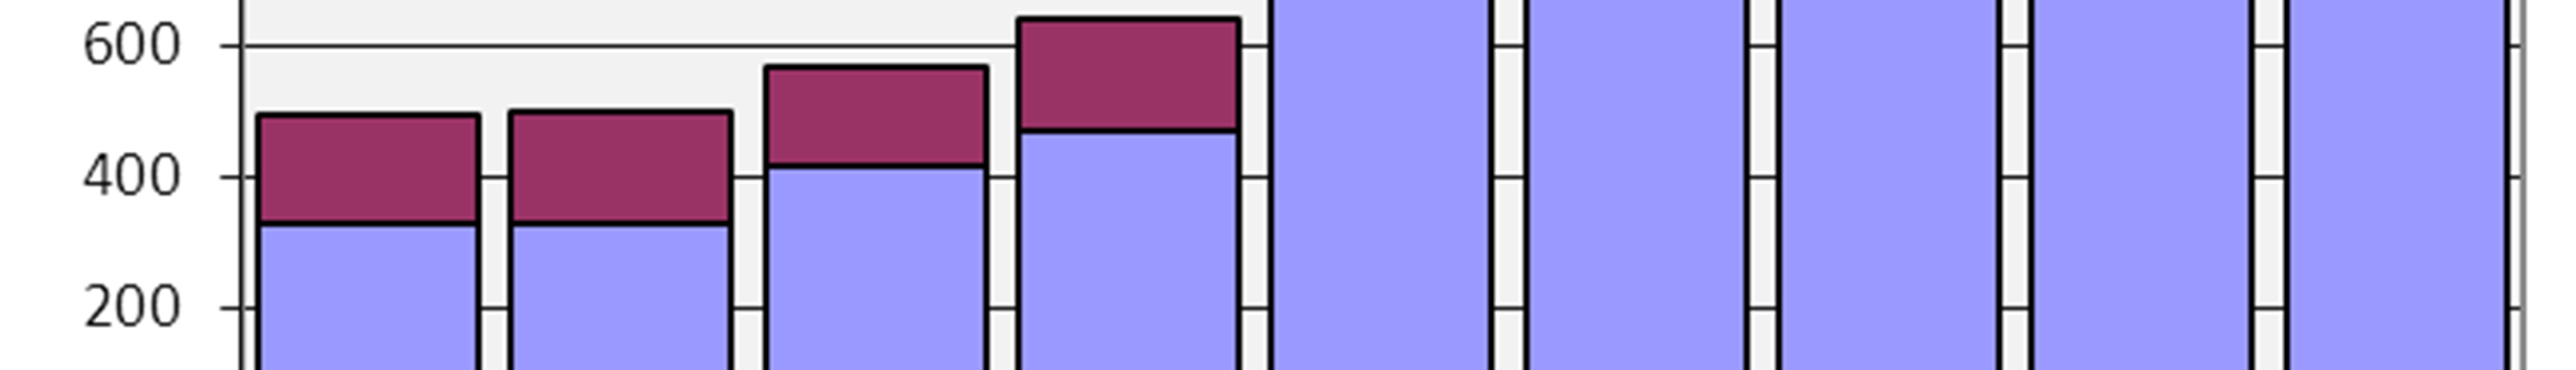 Nel grafico 1 è illustrato l andamento dell utenza distribuito per anno.